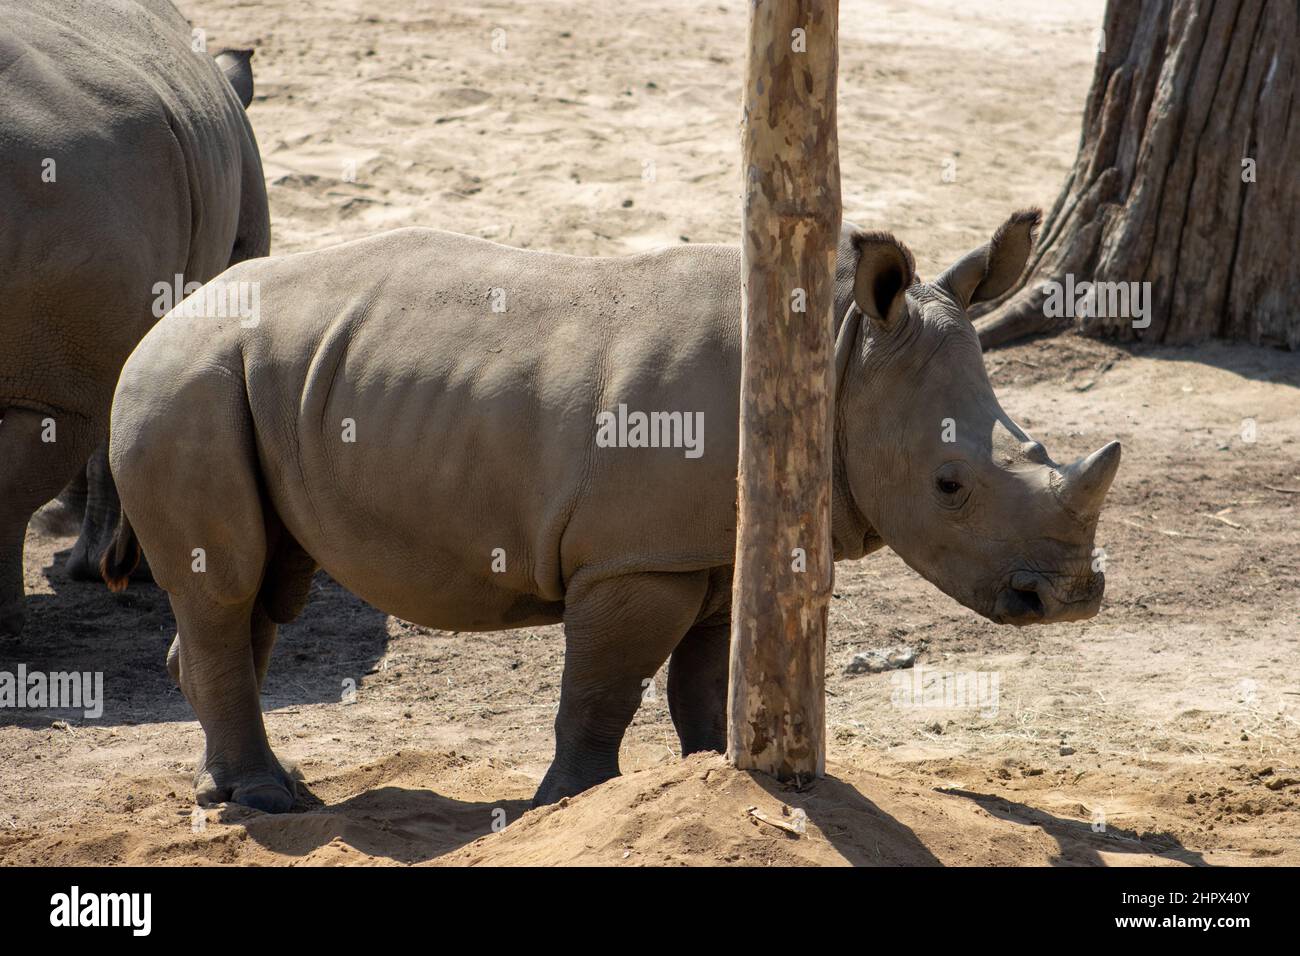 Les rhinocéros de Javan (Rhinoceros sondaicus), Wildlife Safari, Oregon, États-Unis. Également connu sous le nom de rhinocéros de Sunda ou de rhinocéros à cornes Banque D'Images